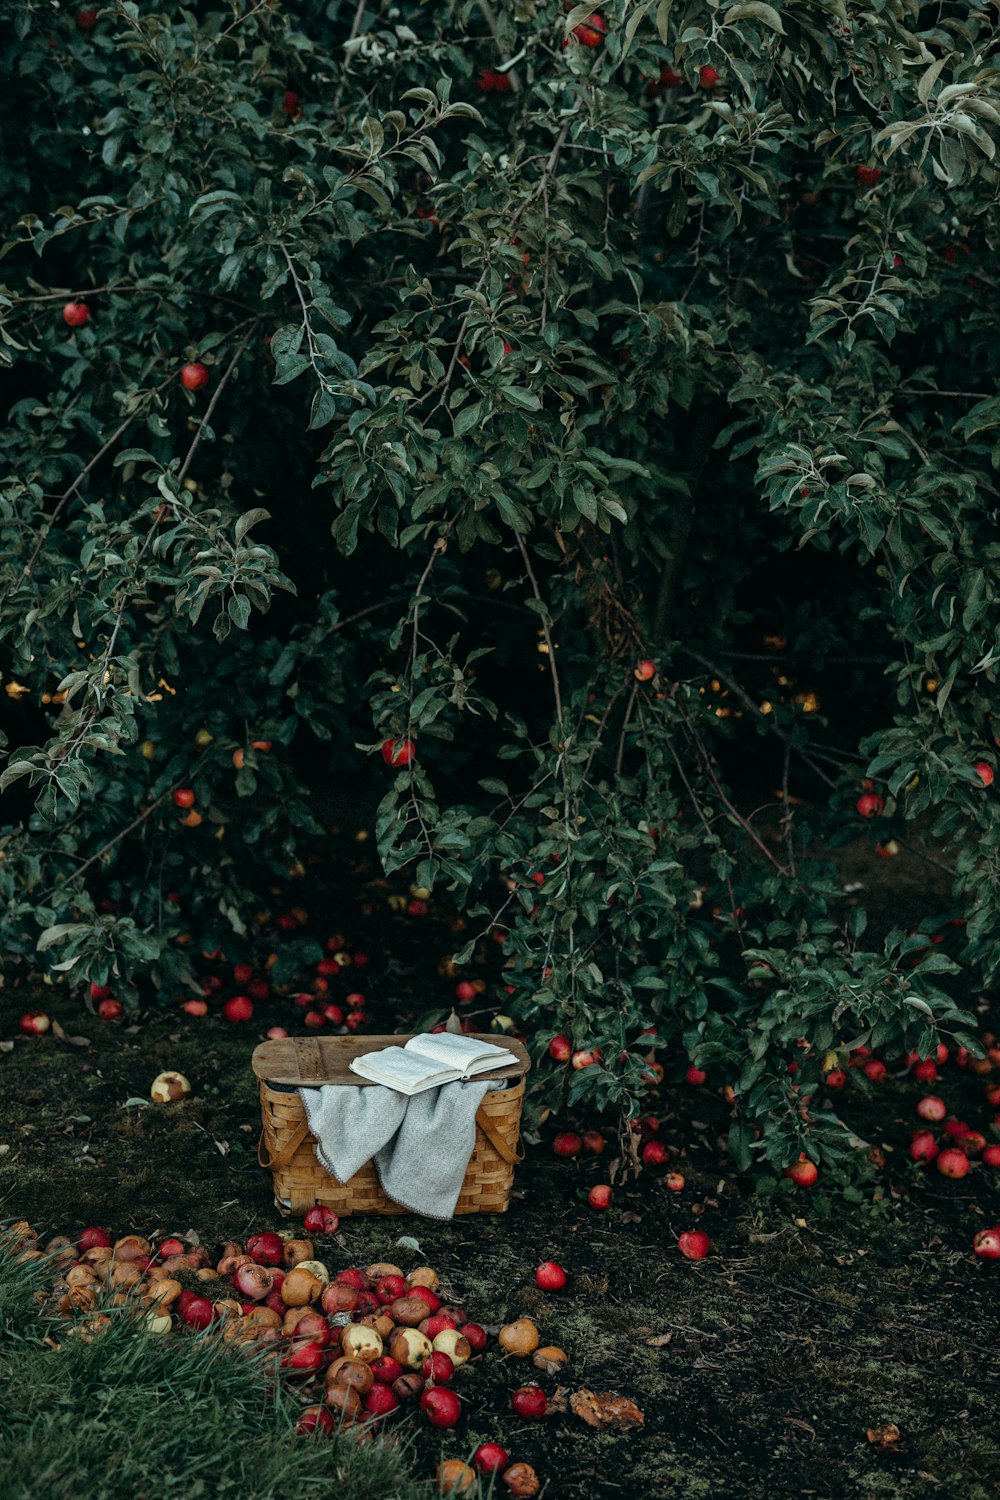 Foto des Korbs in der Nähe von Früchten und Baum